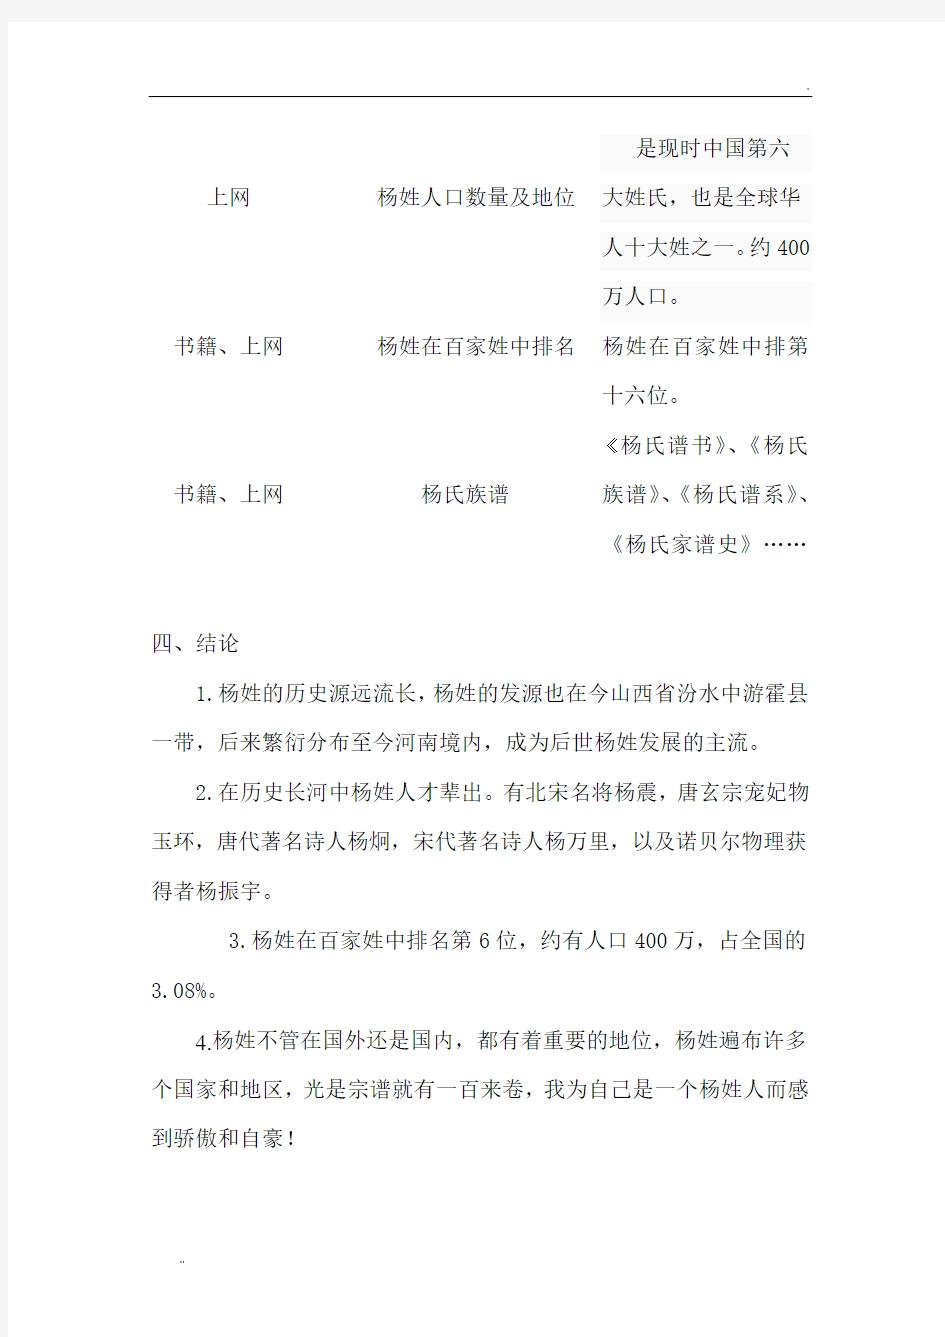 关于杨姓的历史和现状的研究报告 (3)